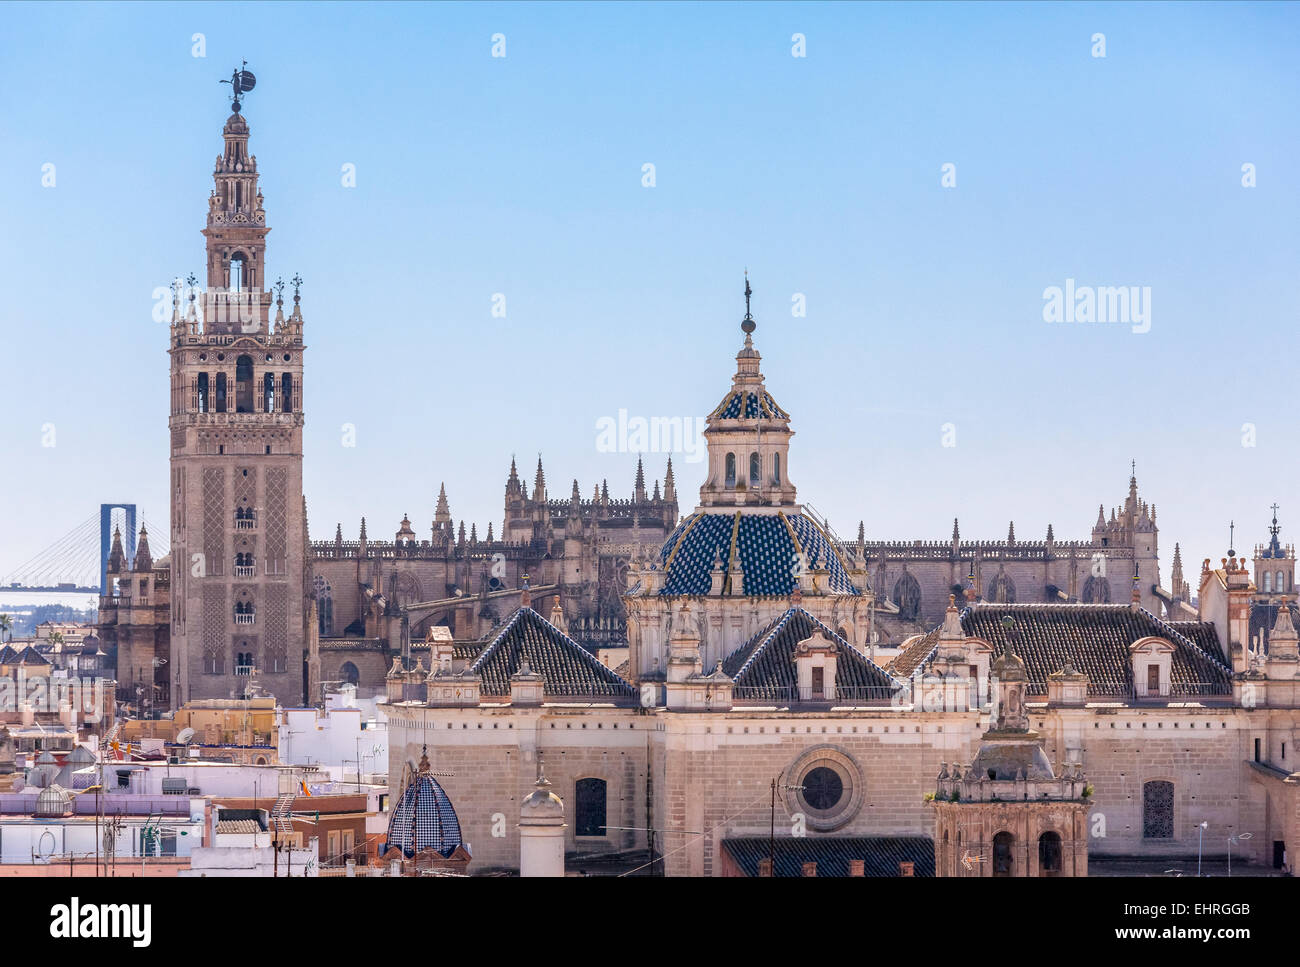 Siviglia Spagna skyline con la torre Giralda Cattedrale El Salvador Chiesa e bridge visto dalla Parasol Metropol città si affacciano Foto Stock